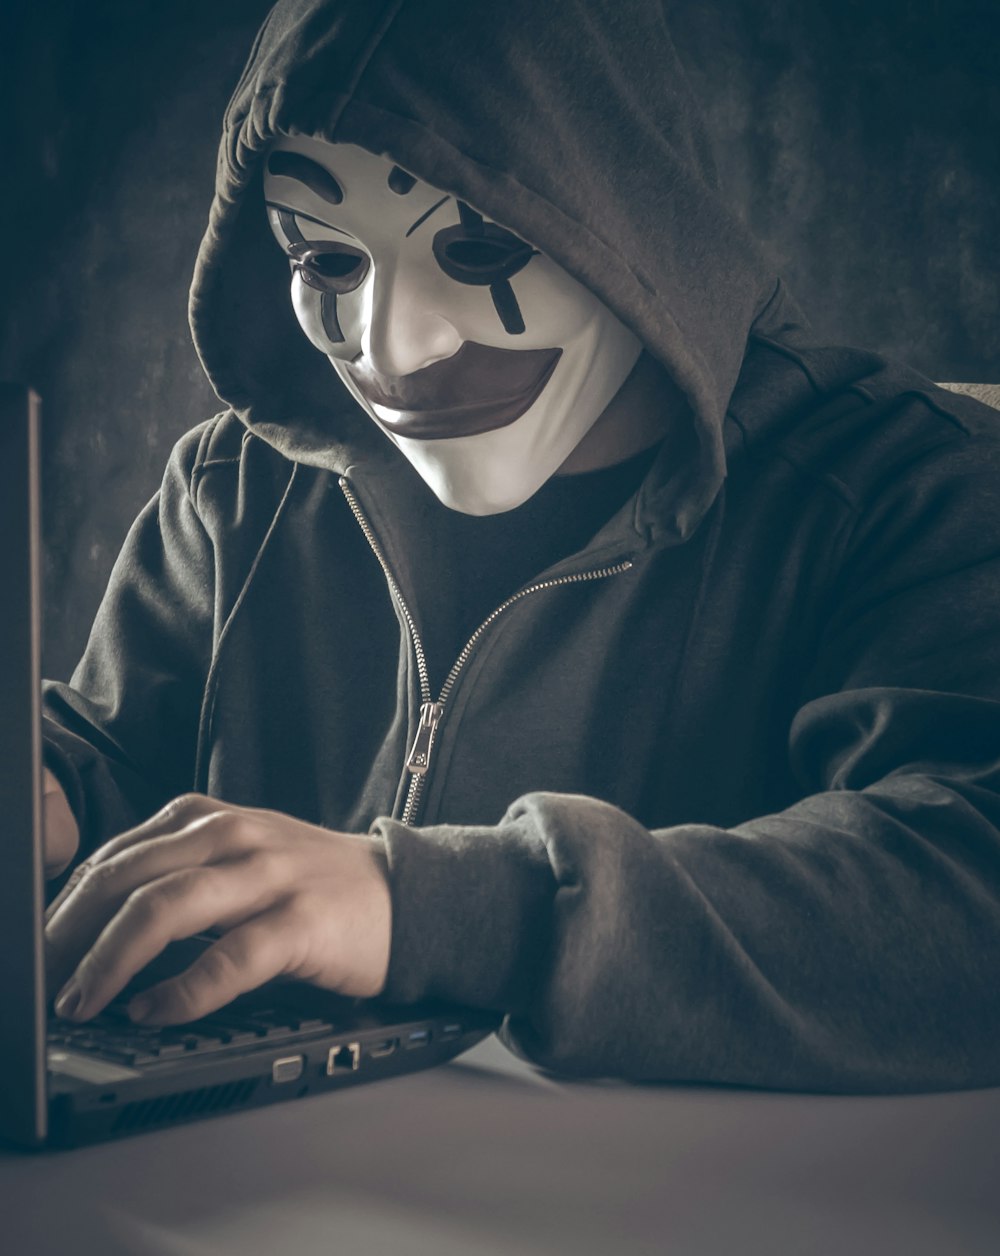 uma pessoa usando uma máscara usando um laptop